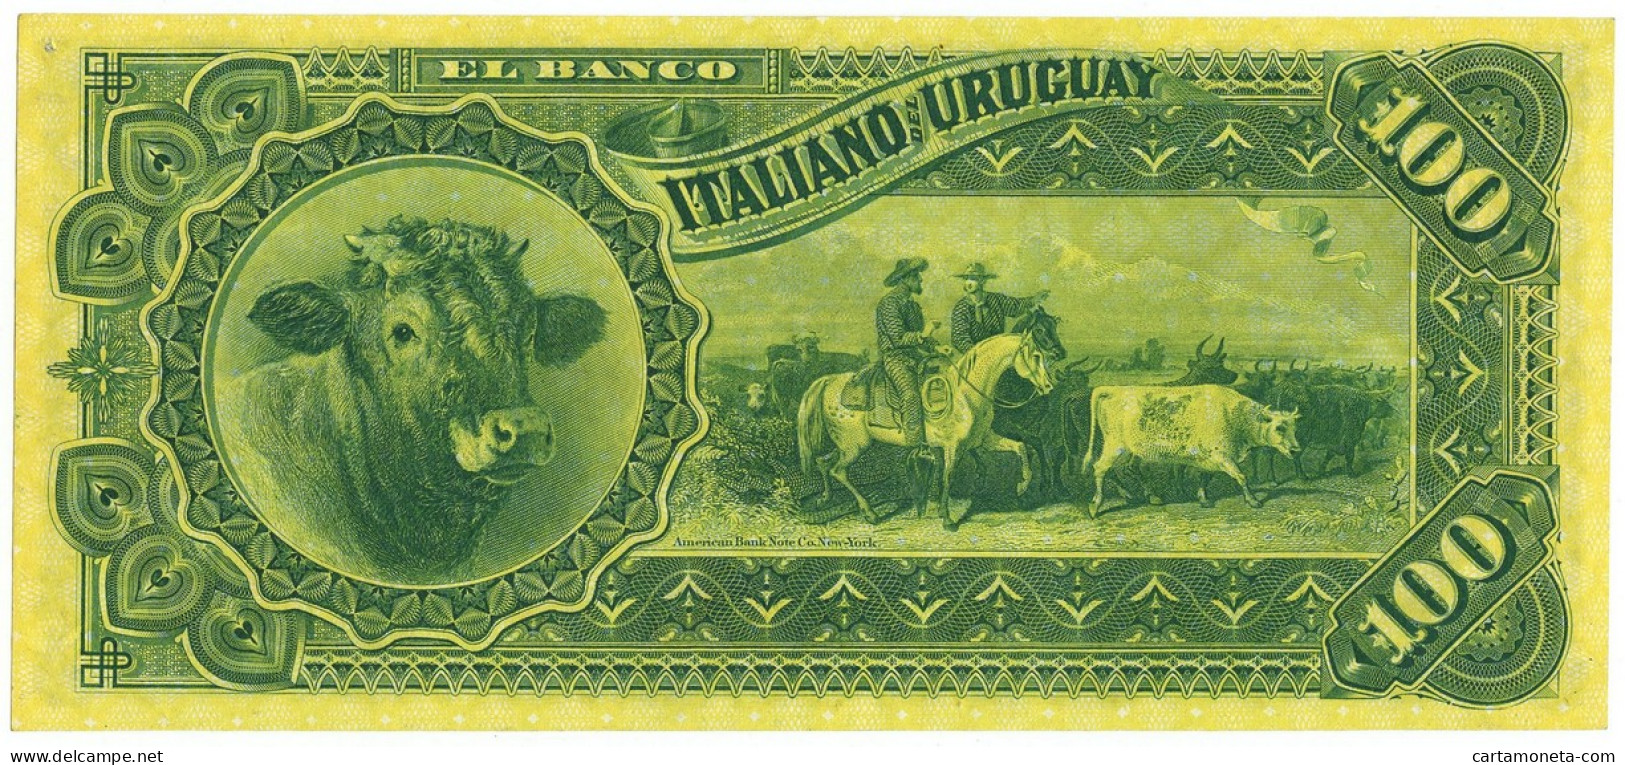 100 PESOS EL BANCO ITALIANO DELL'URUGUAY MONTEVIDEO 20/09/1887 QFDS - [ 7] Errores & Variedades